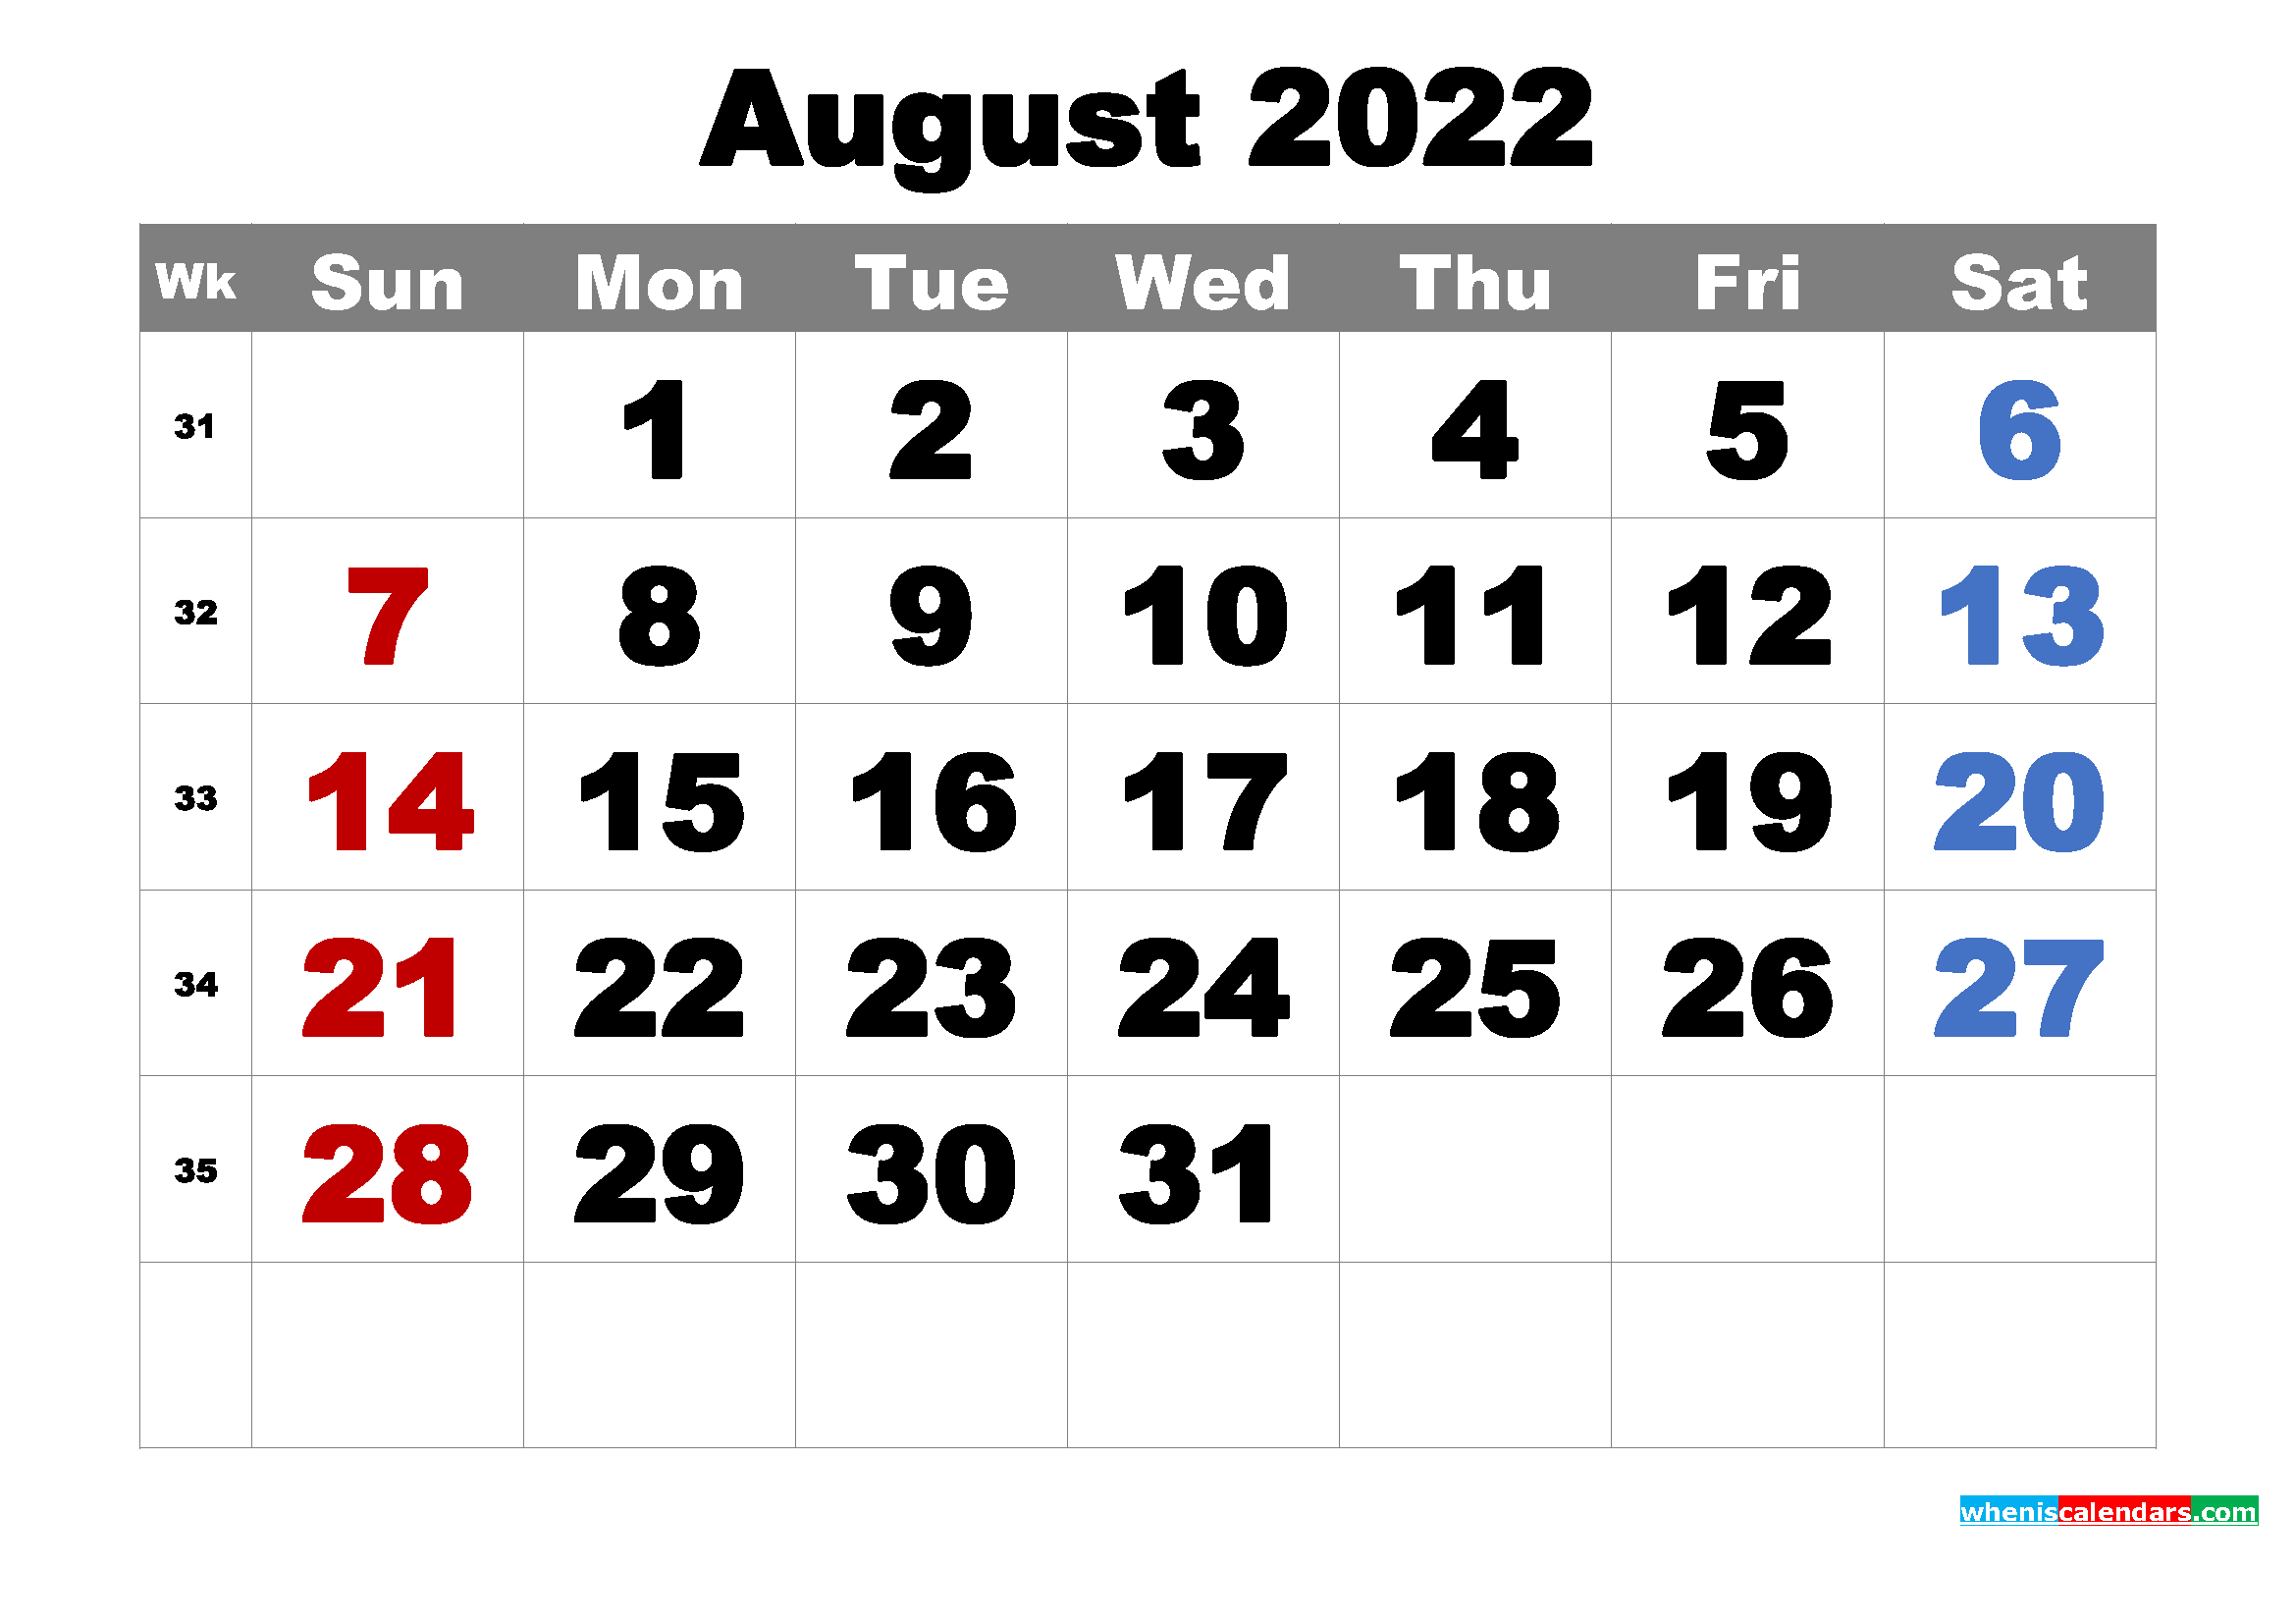 download 2022 calendar word